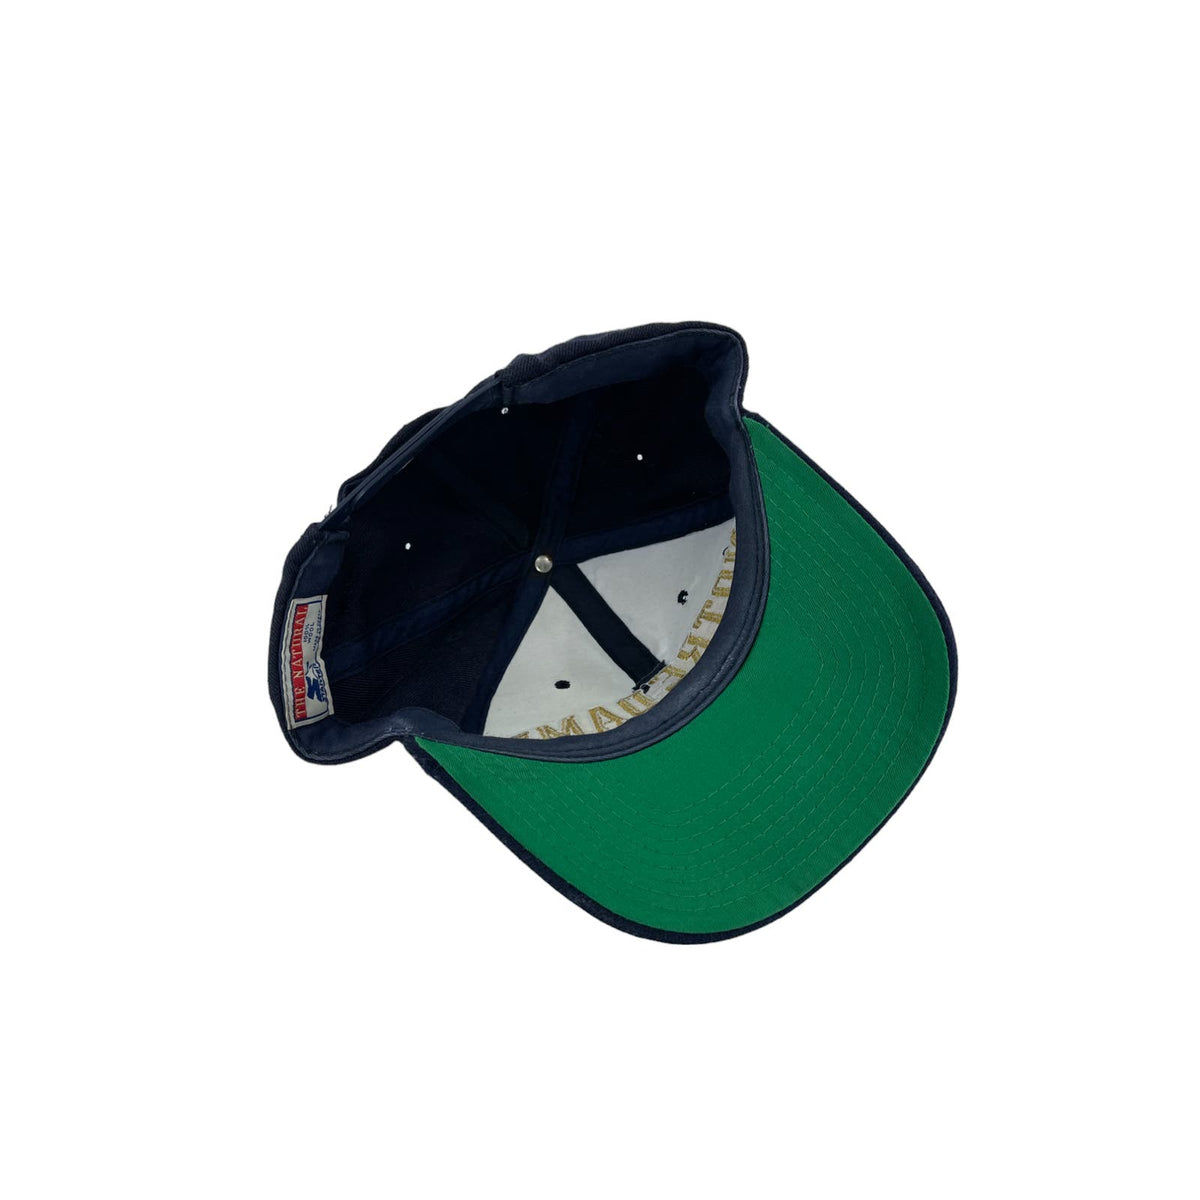 Vintage 1990's Starter Notre Dame University Embroidered Snapback Hat